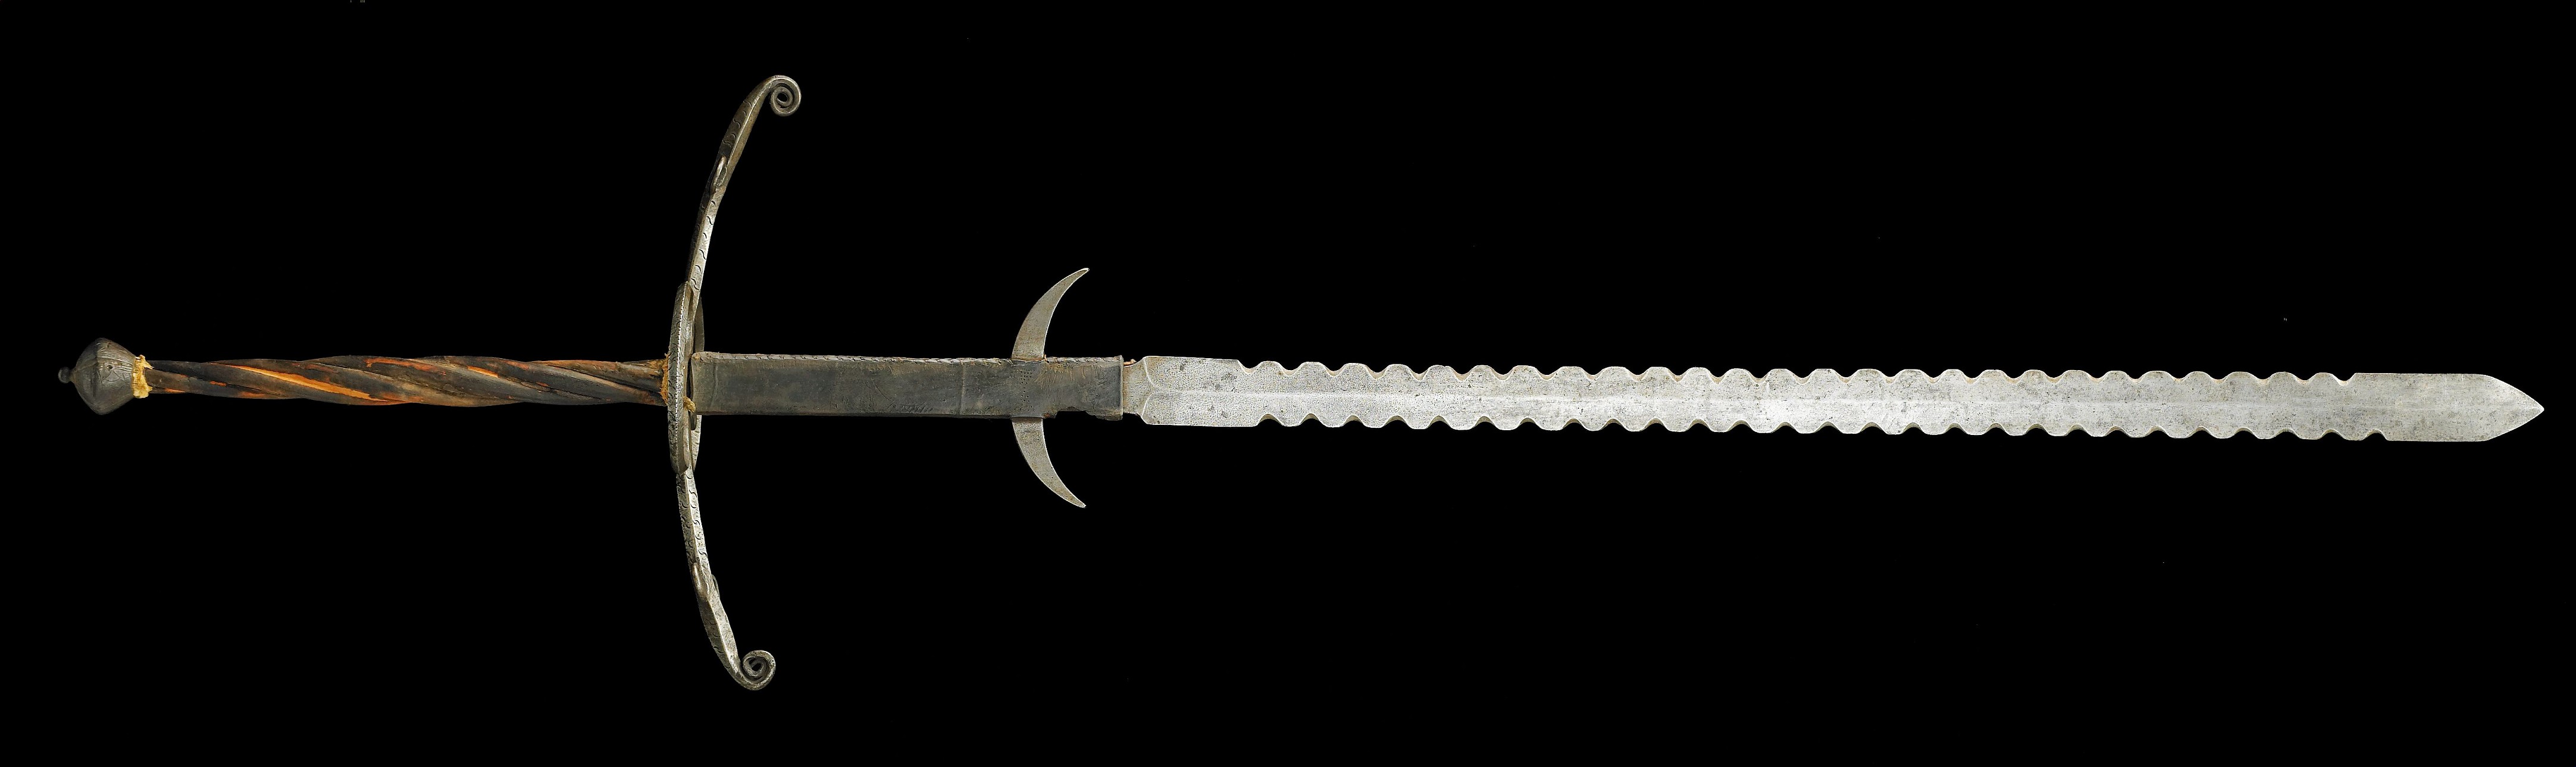 weapons, swords - desktop wallpaper